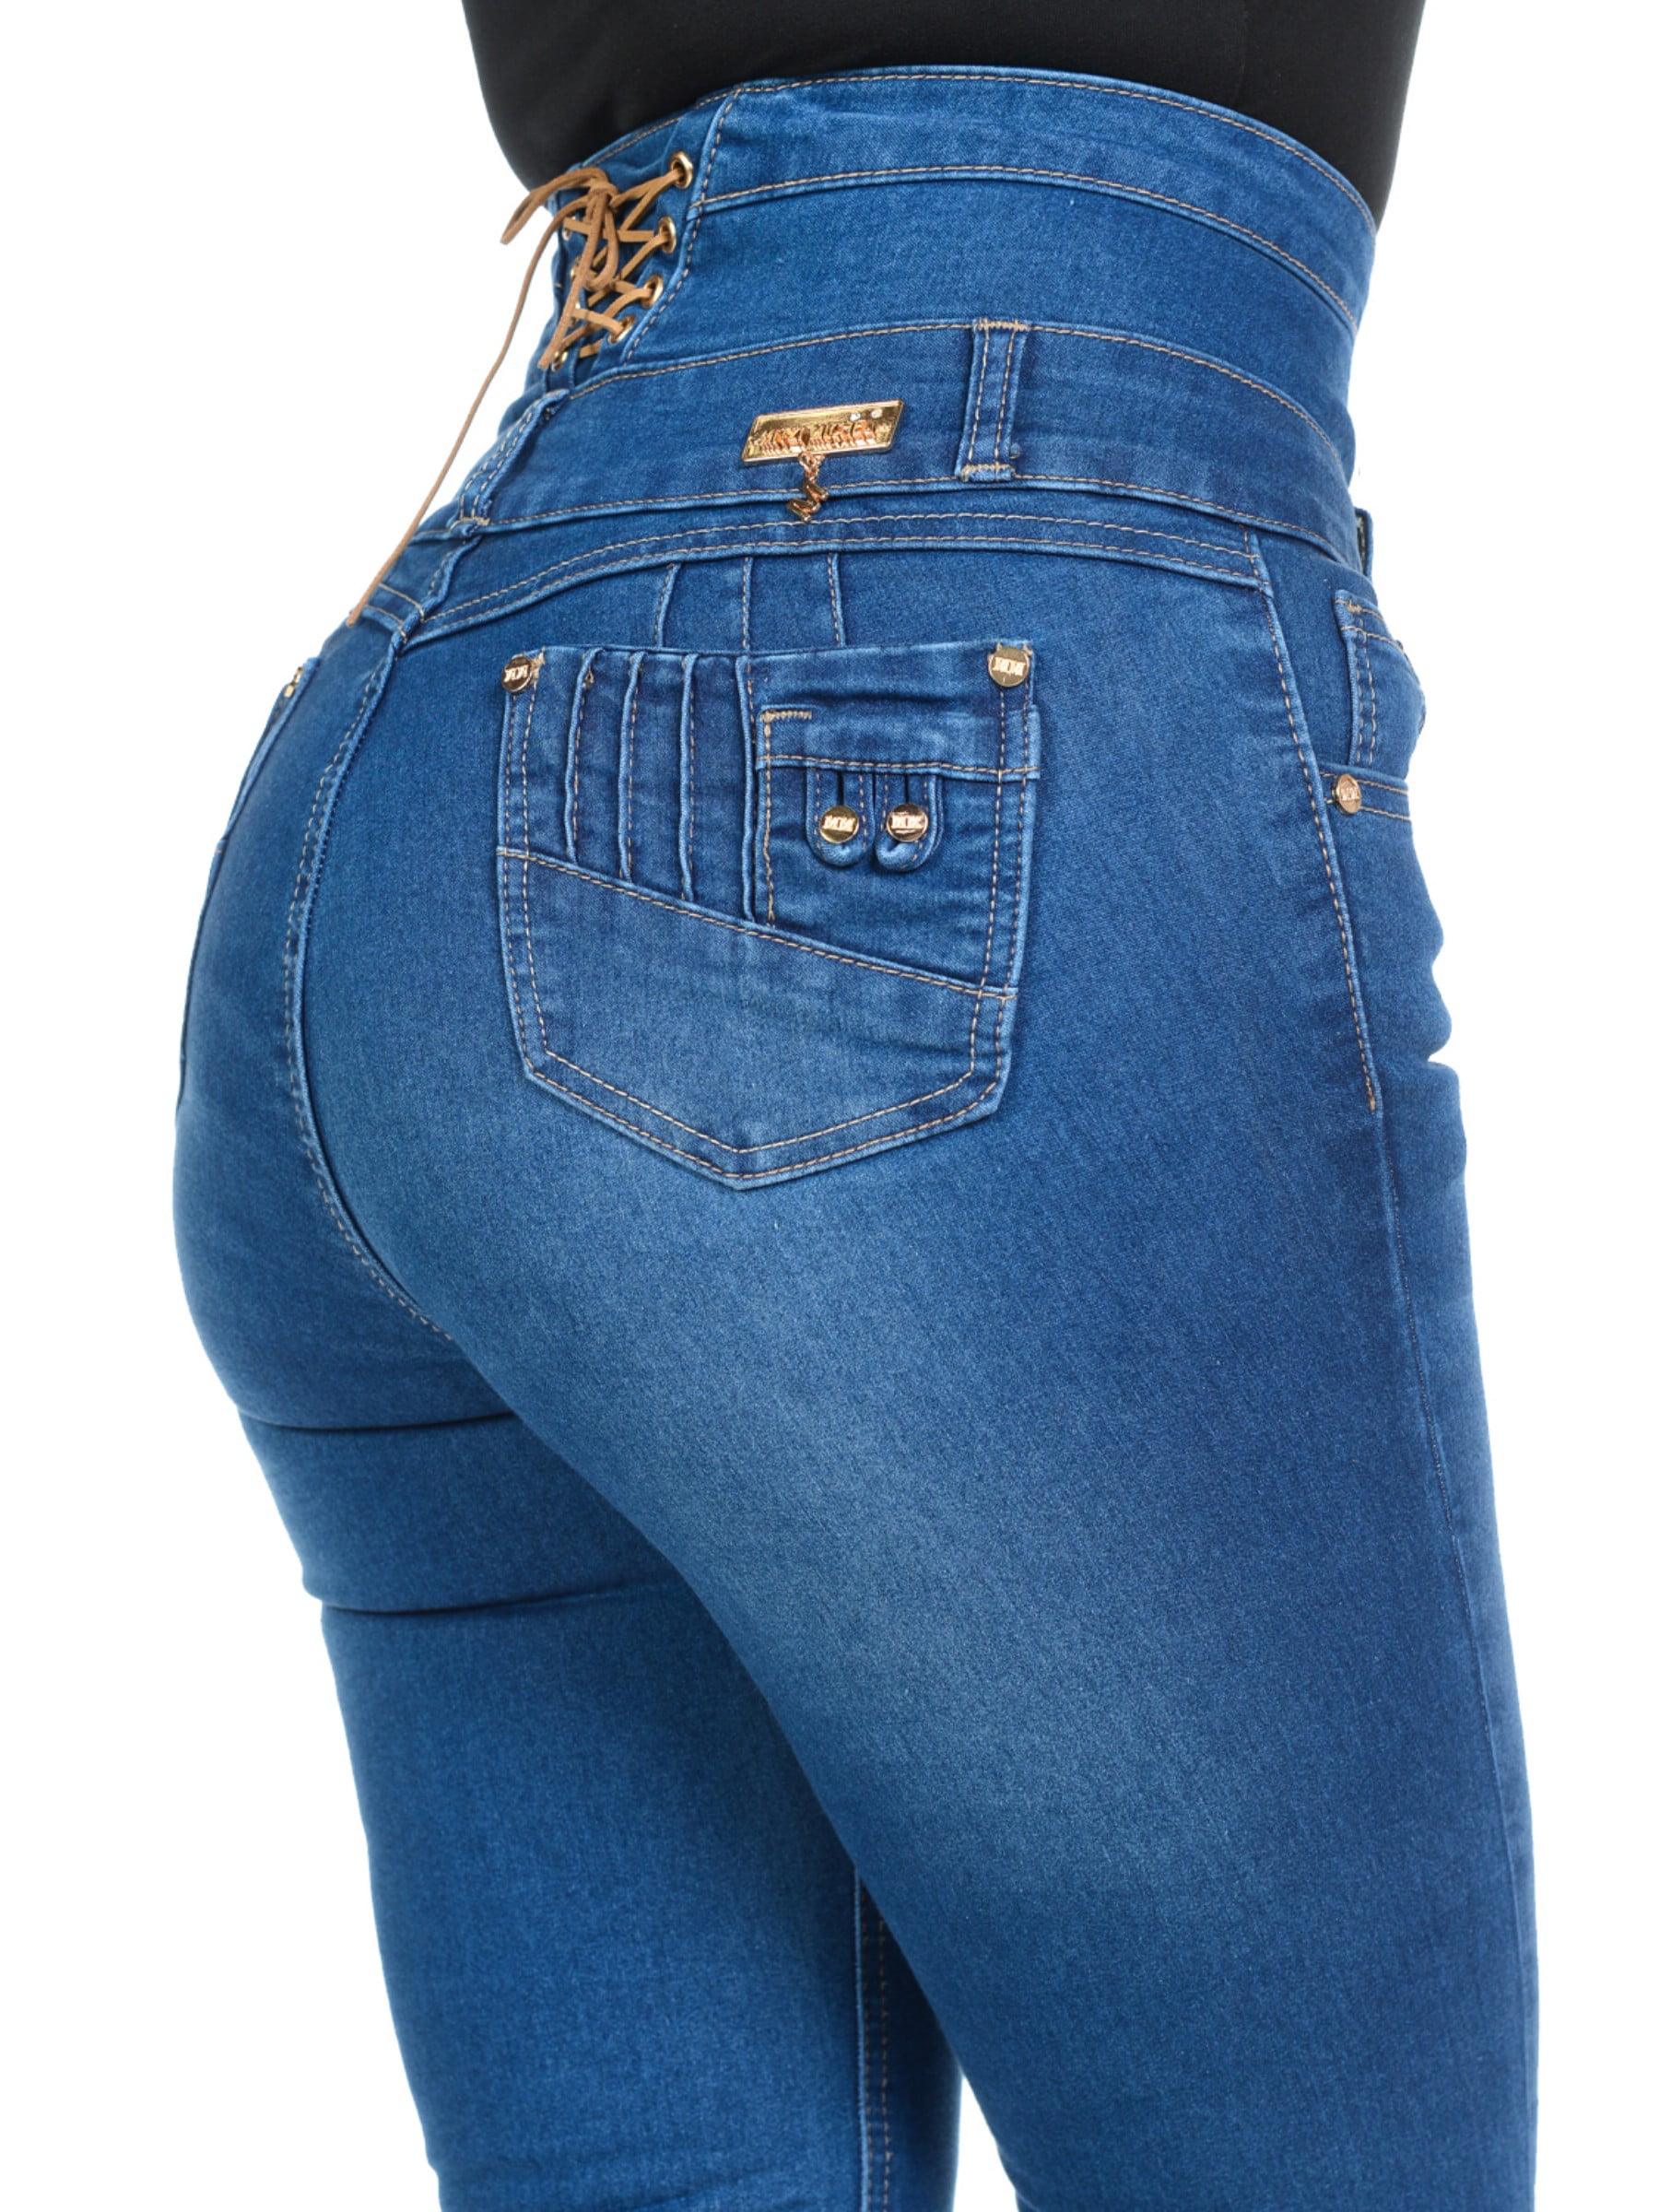 Women's Blue Colombian High Waist Jeans Stretch Push Up Butt